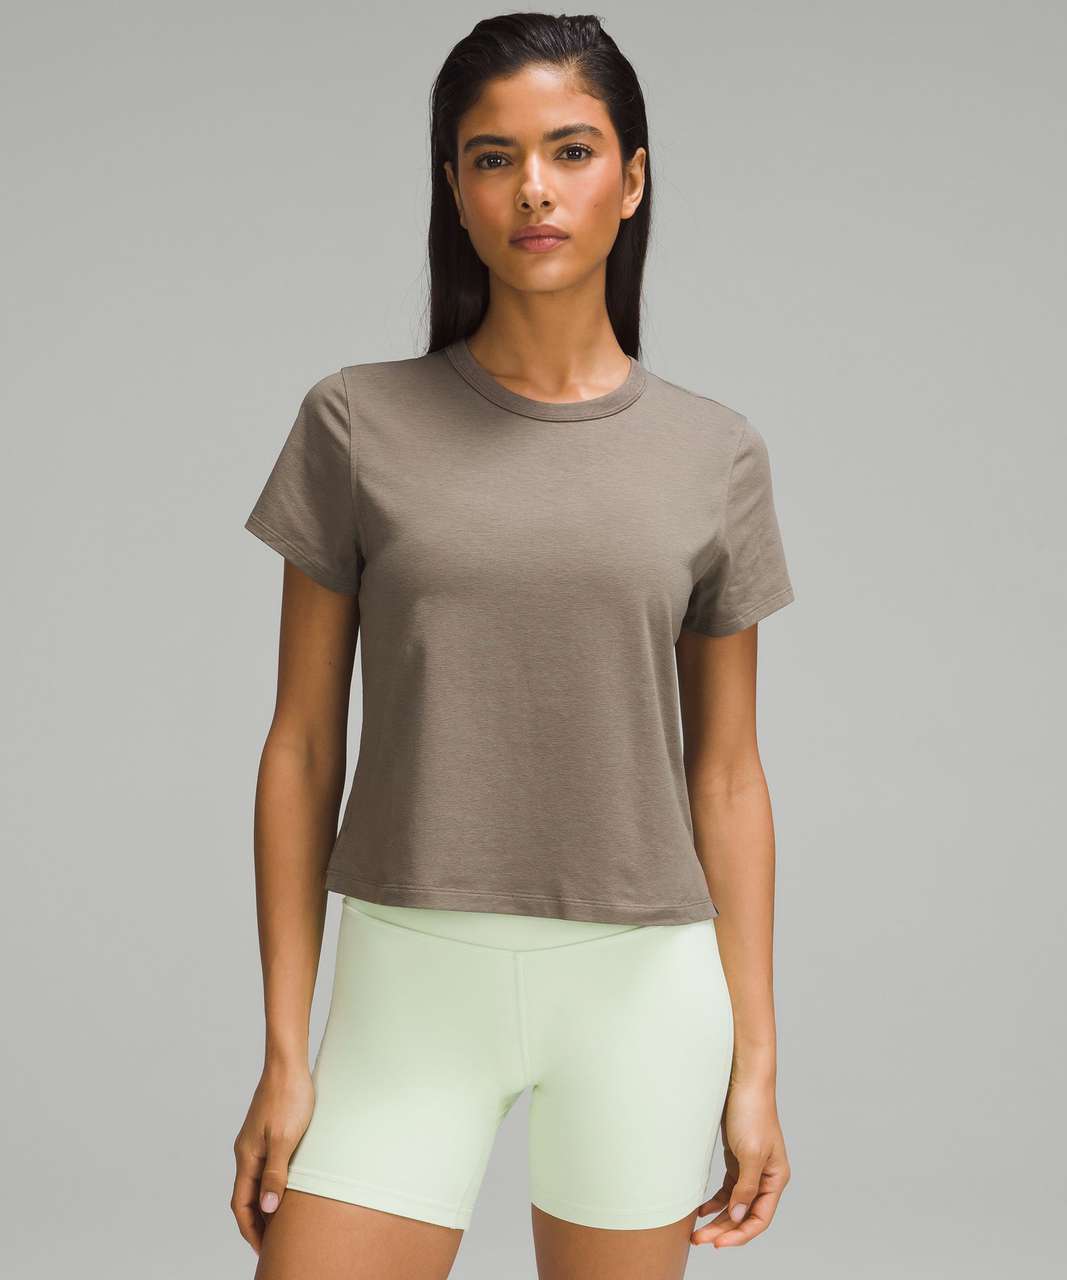 Lululemon Classic-Fit Cotton-Blend T-Shirt - Nomad